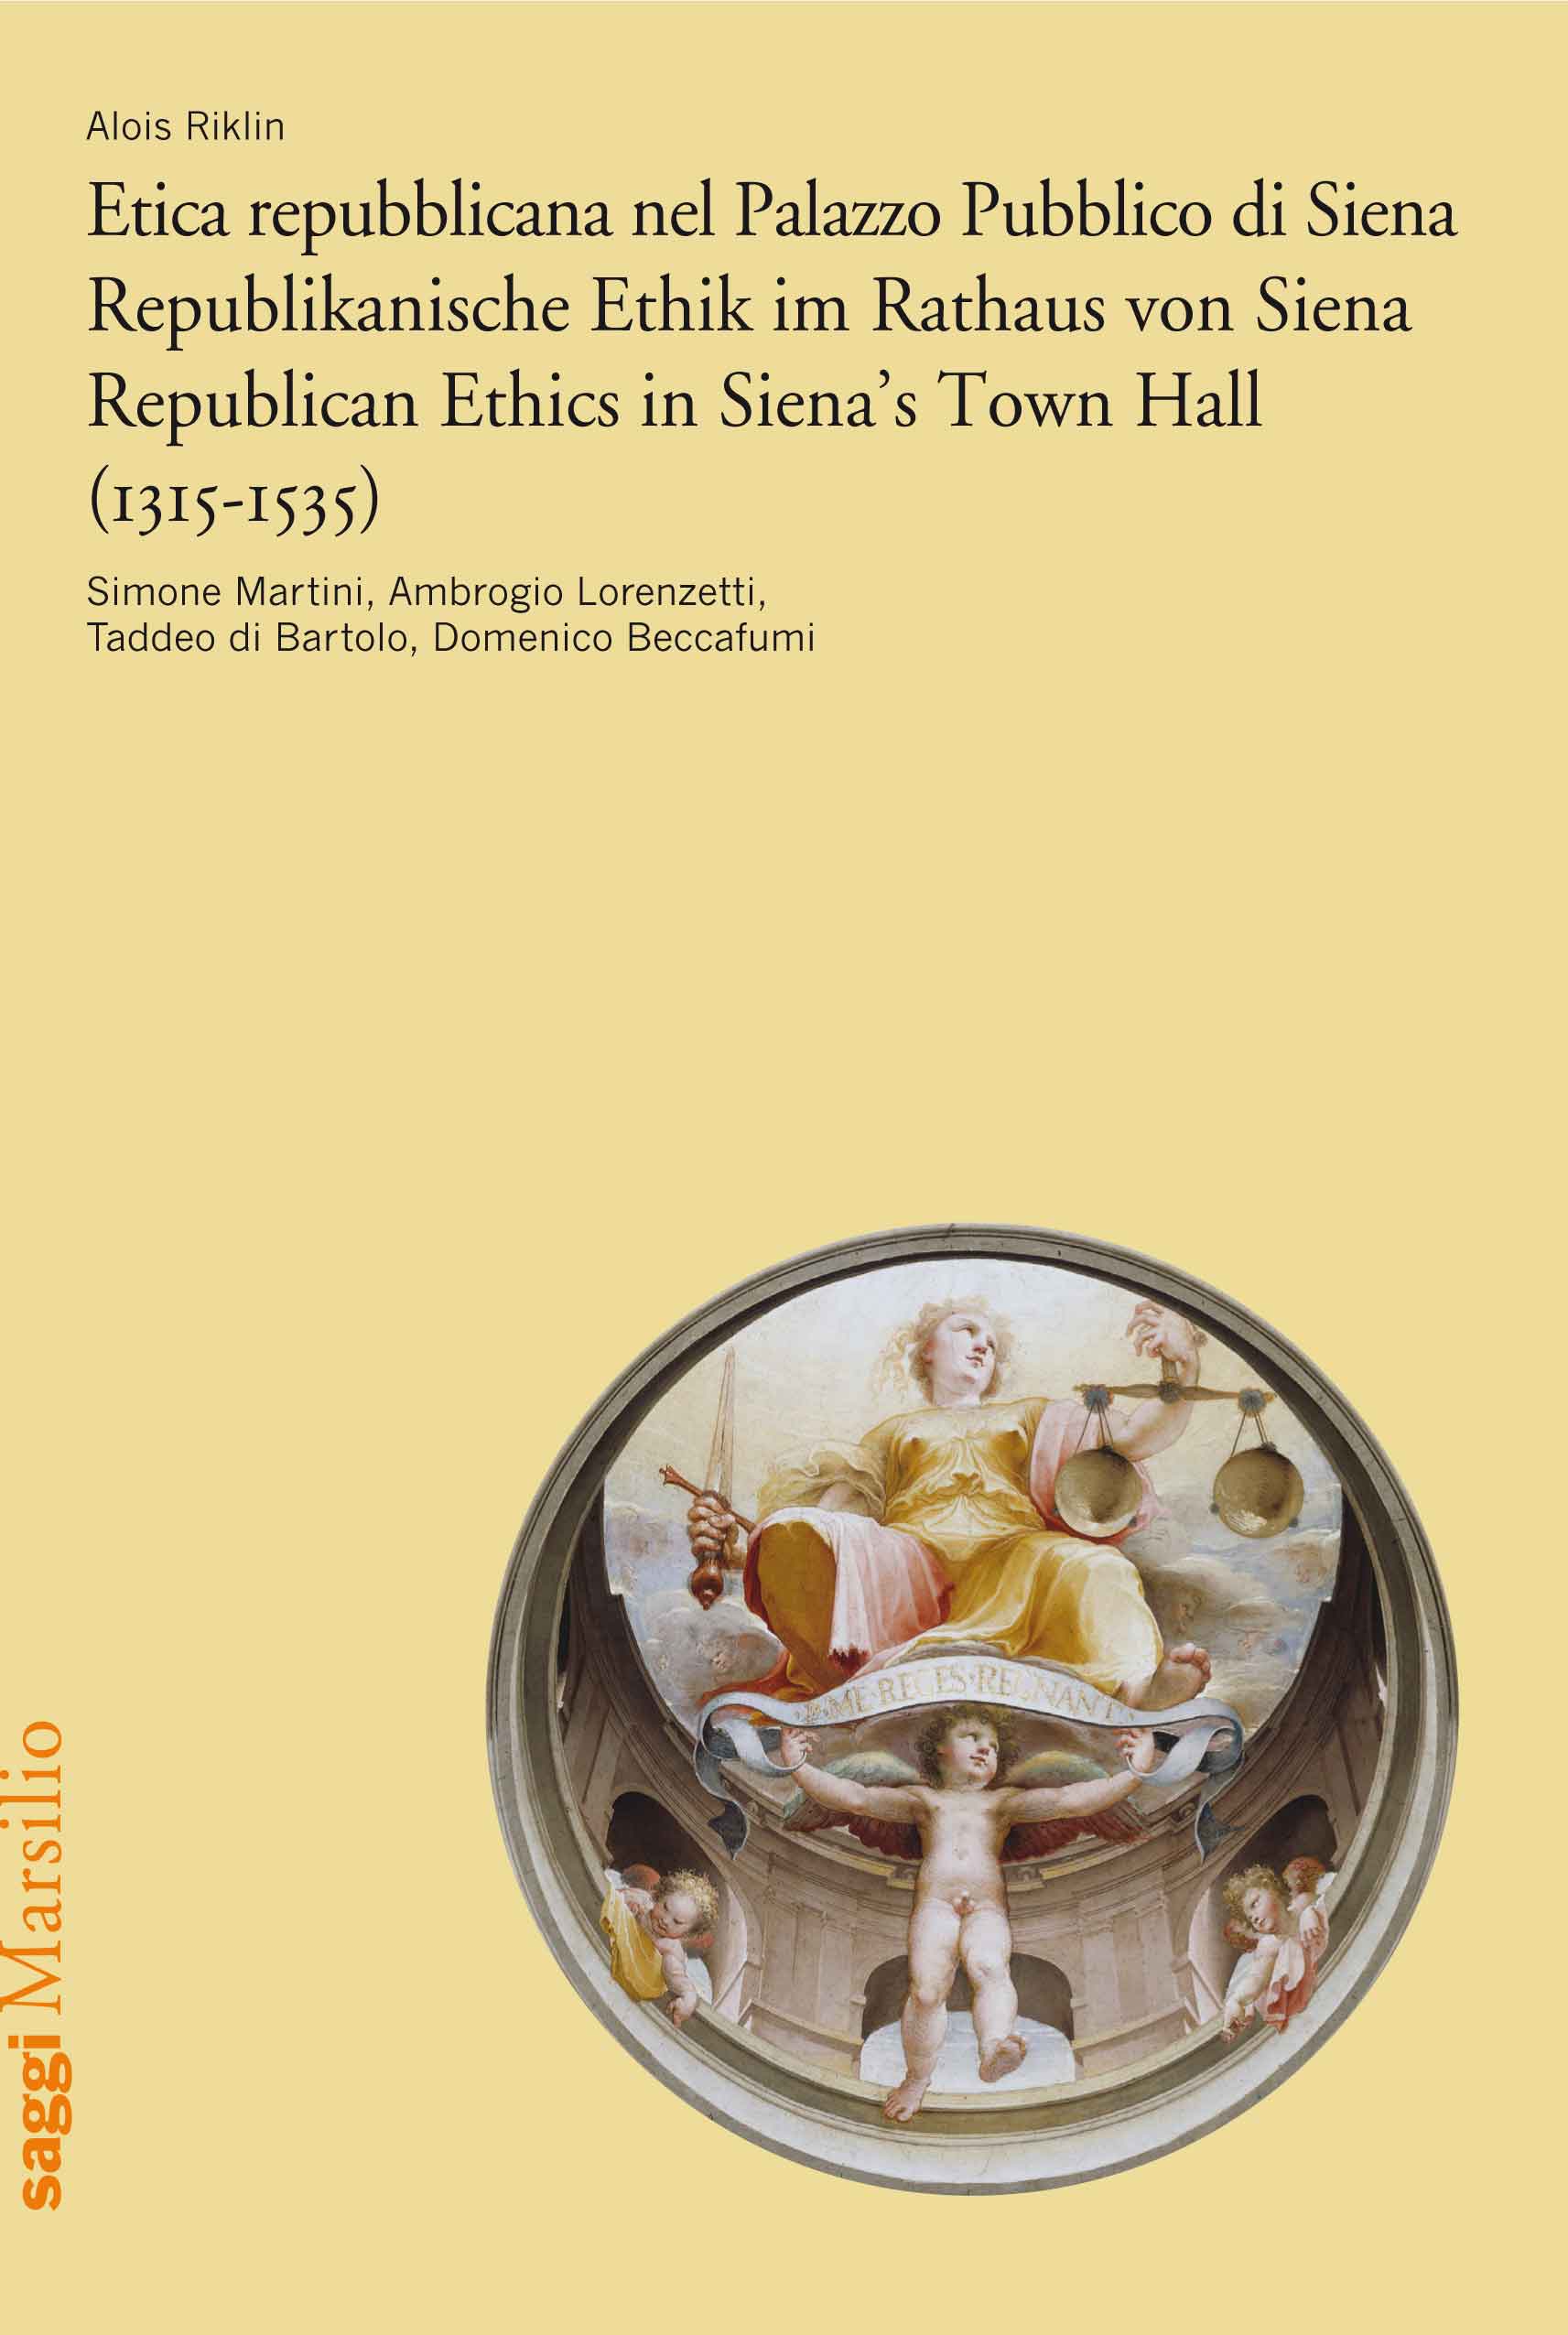 Etica repubblicana nel Palazzo Pubblico di Siena (1315-1535)